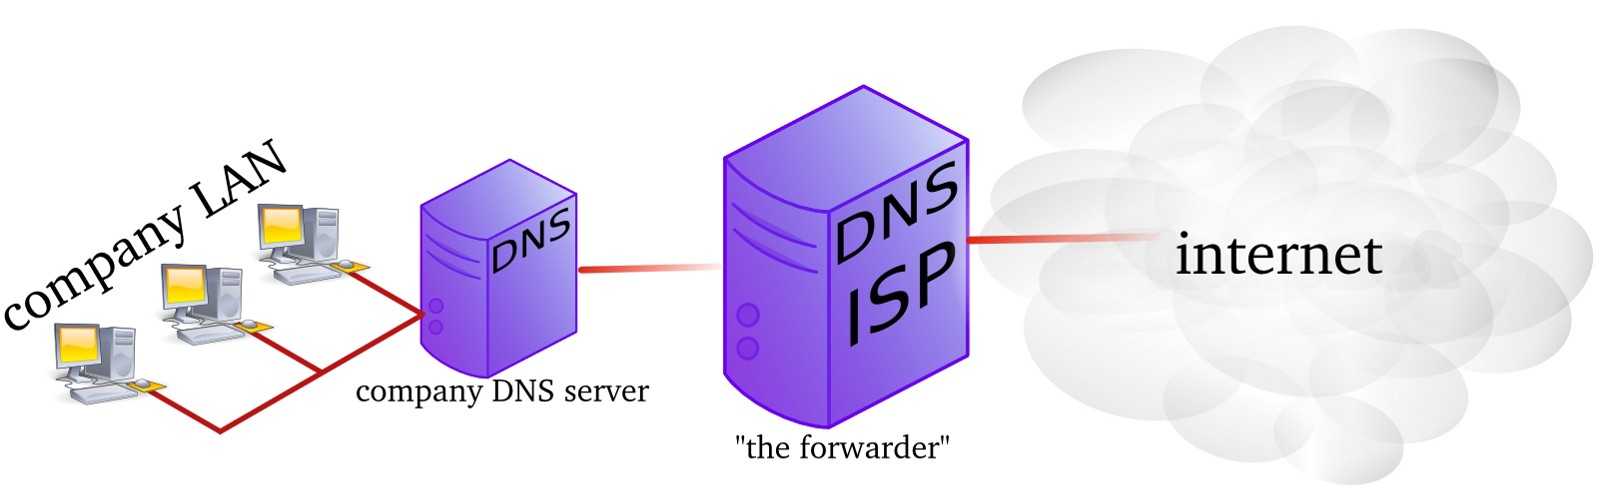 Установка dns сервера на windows server 2012 r2 datacenter и создание зоны прямого просмотра | info-comp.ru - it-блог для начинающих